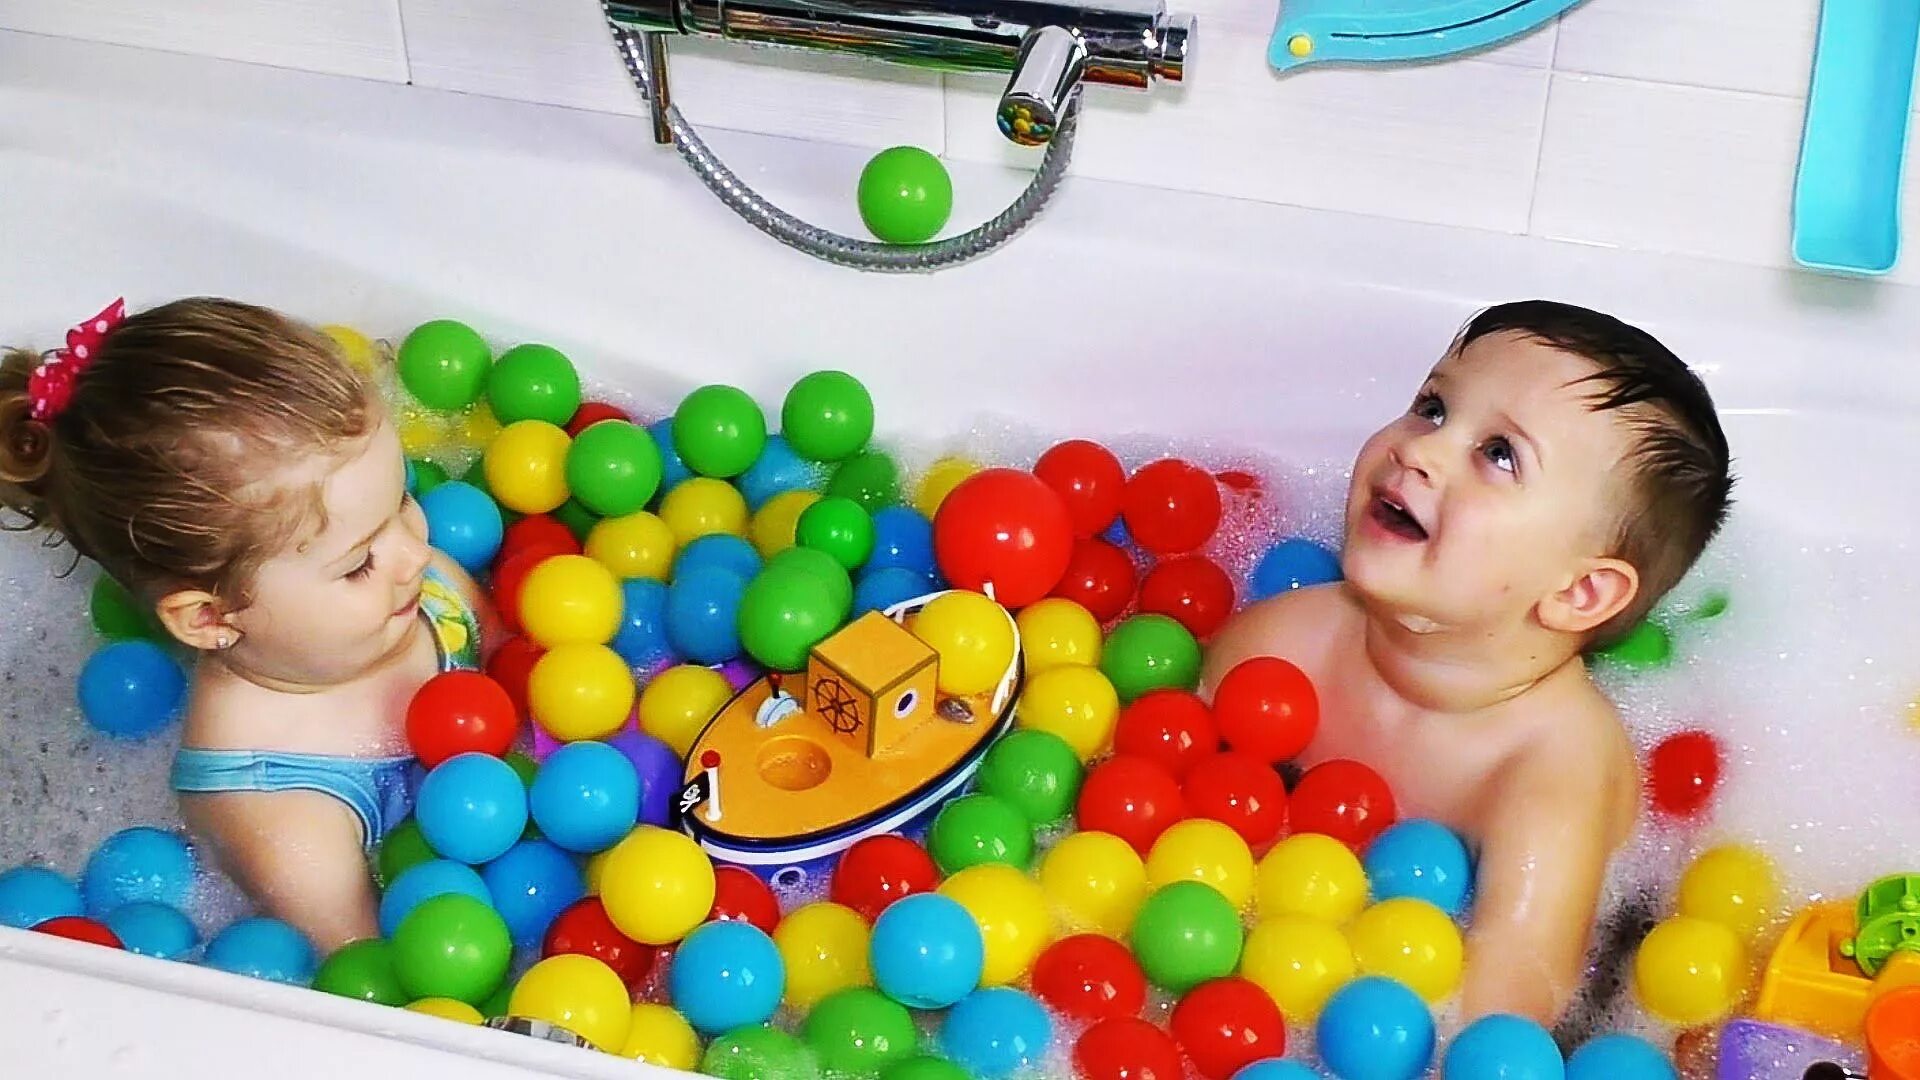 Ванна с шарами. Игрушка для ванны. Игрушки для купания малышей. Развлечение в ванной для детей. Шарики для купания в ванной для детей.